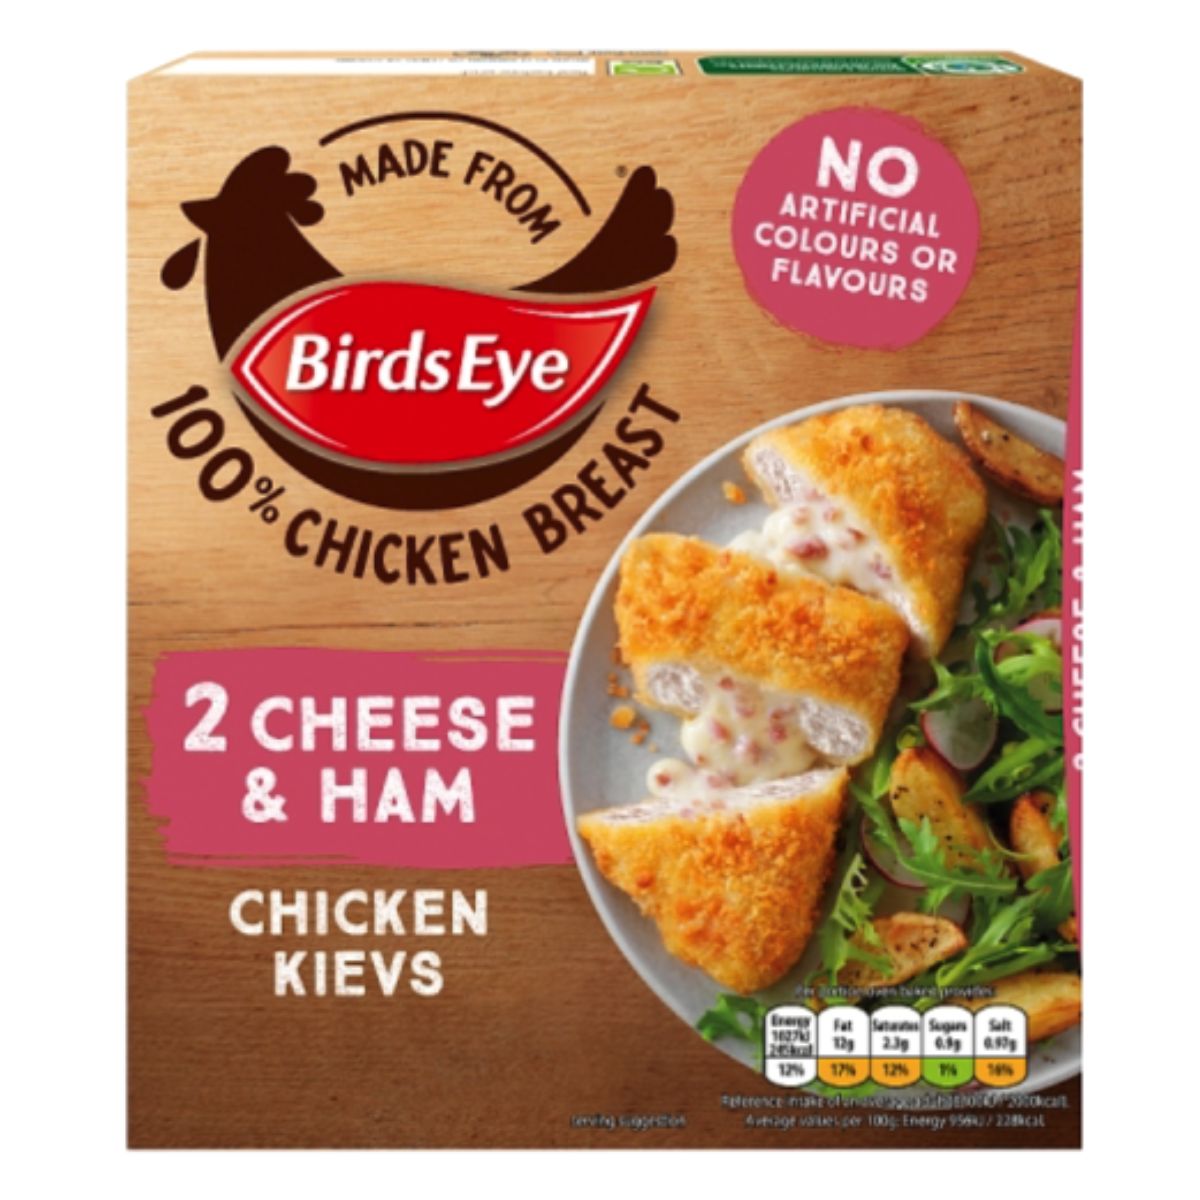 Birds Eye - 2 Cheese & Ham Chicken Kievs - 204g.